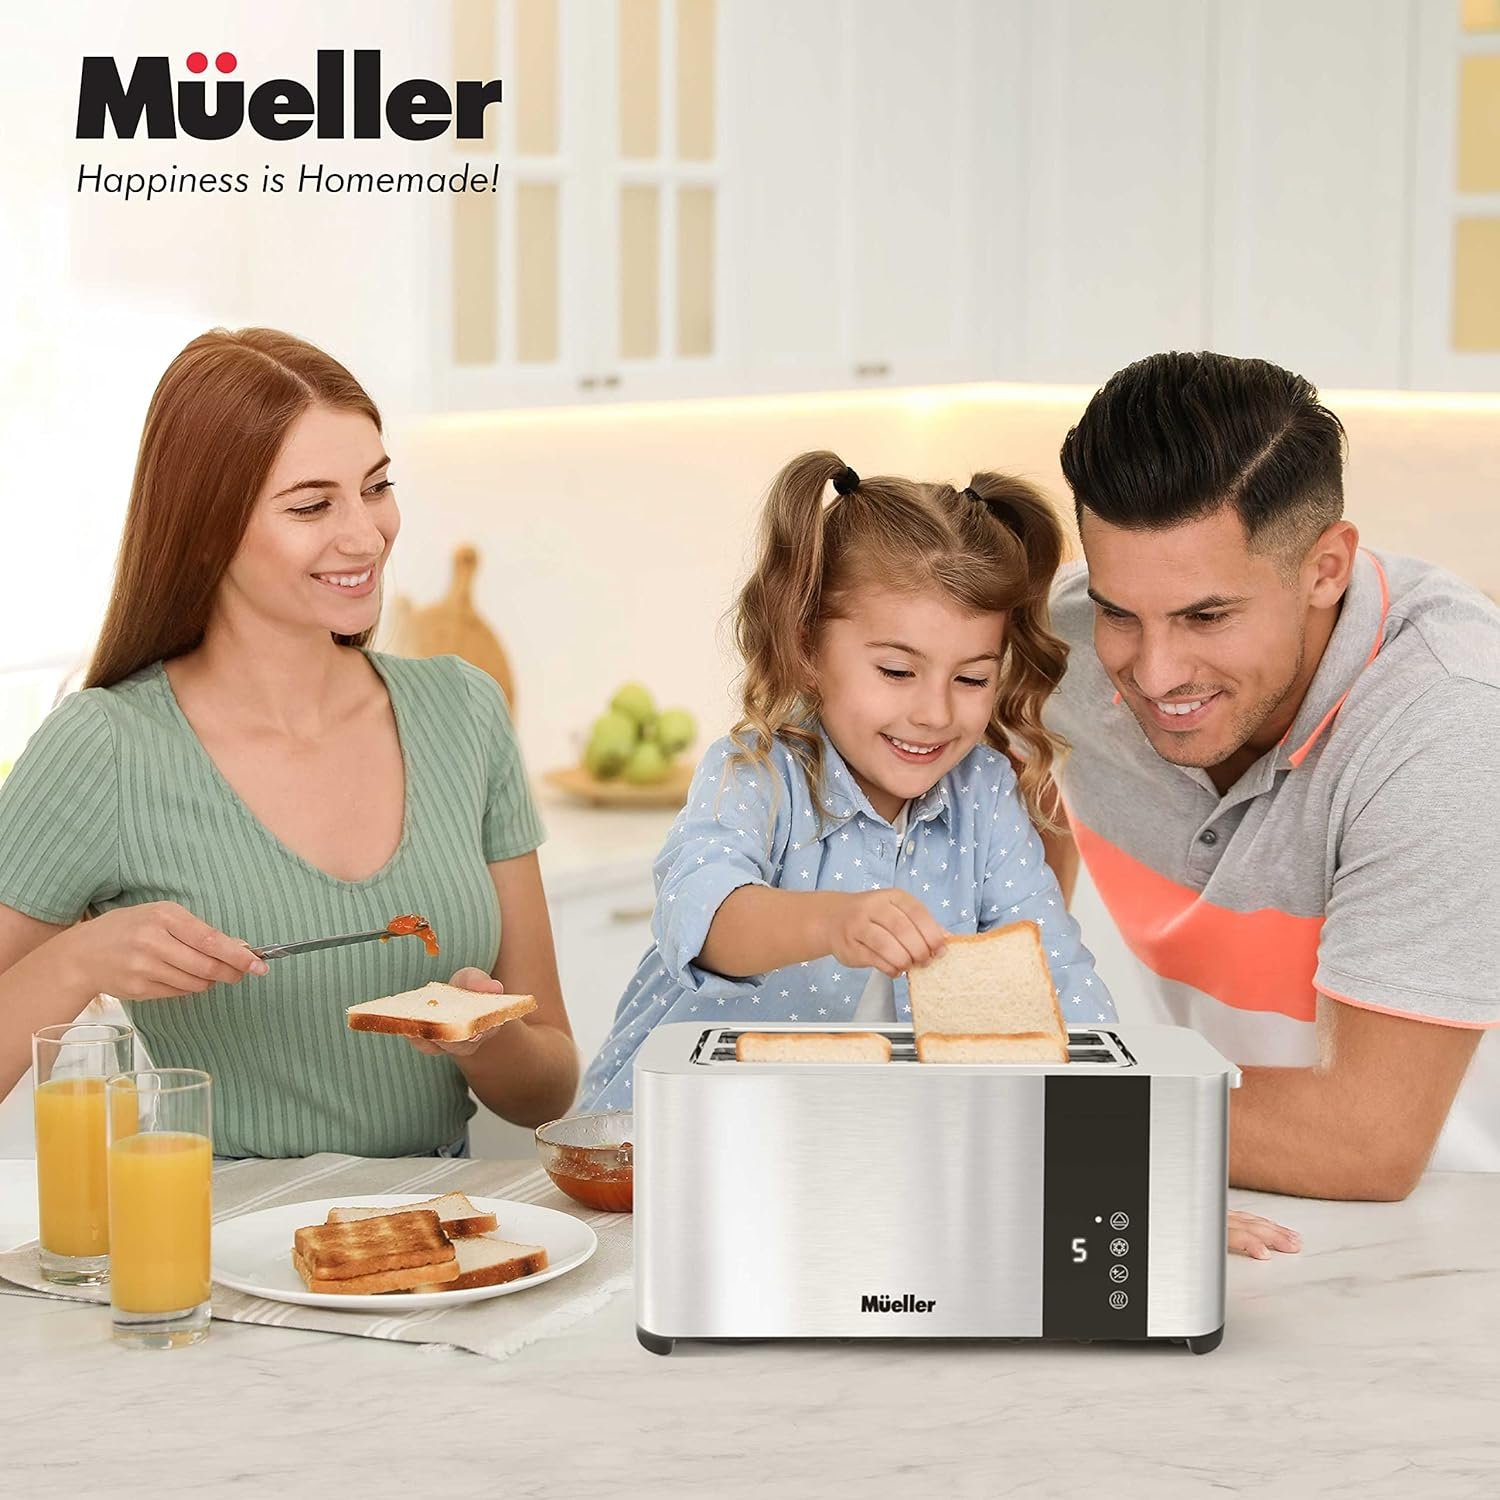 Mueller UltraToast Full Stainless Steel Toaster 2 Slice Review